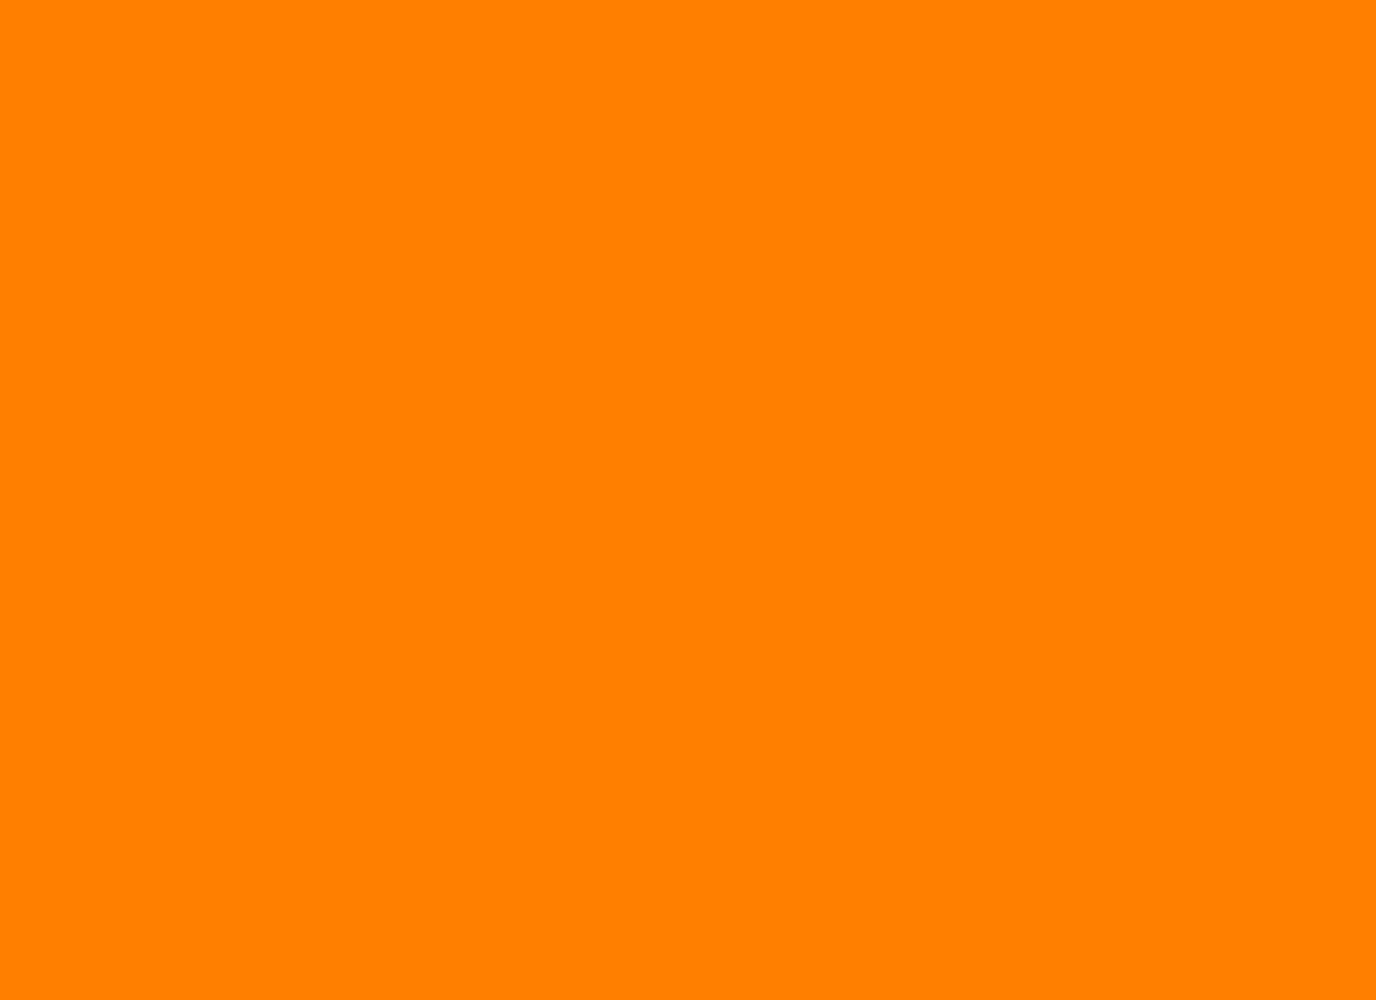 Background-Orange